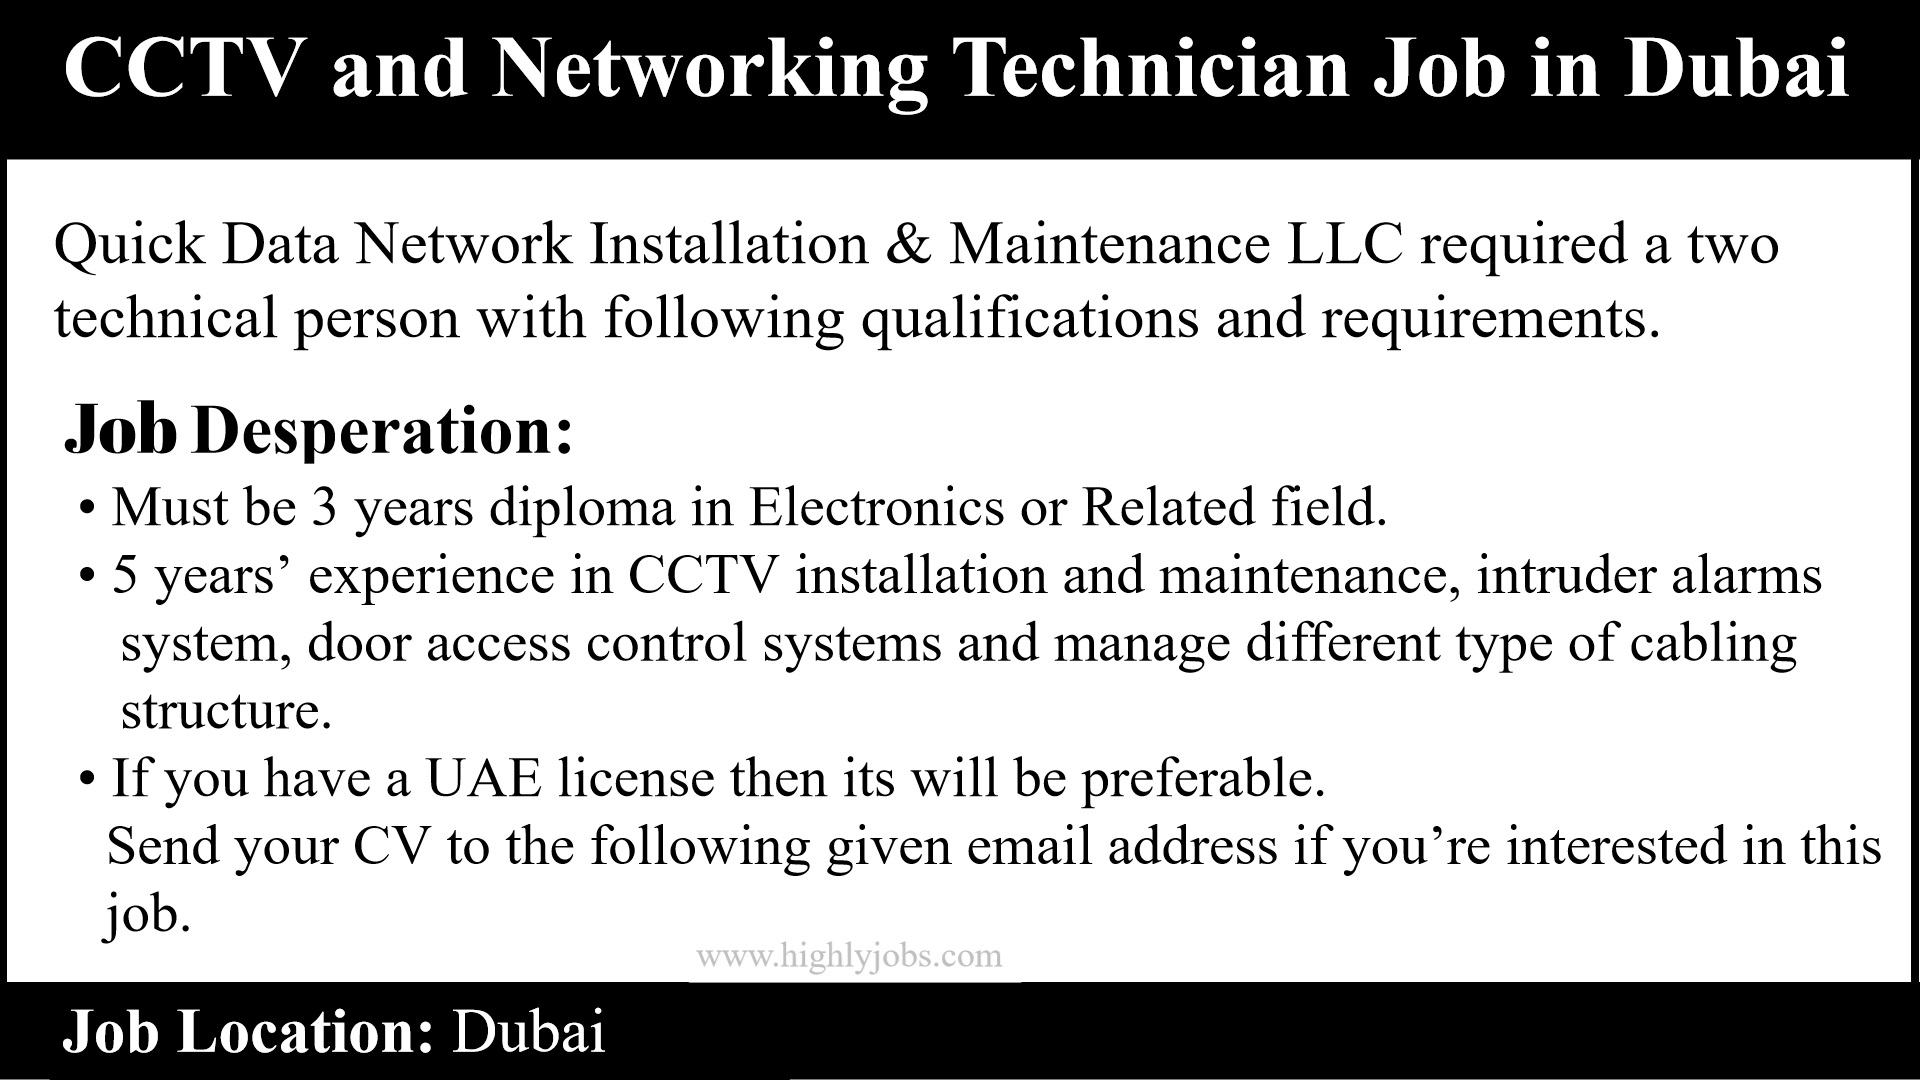 CCTV and Networking Technician Job in Dubai